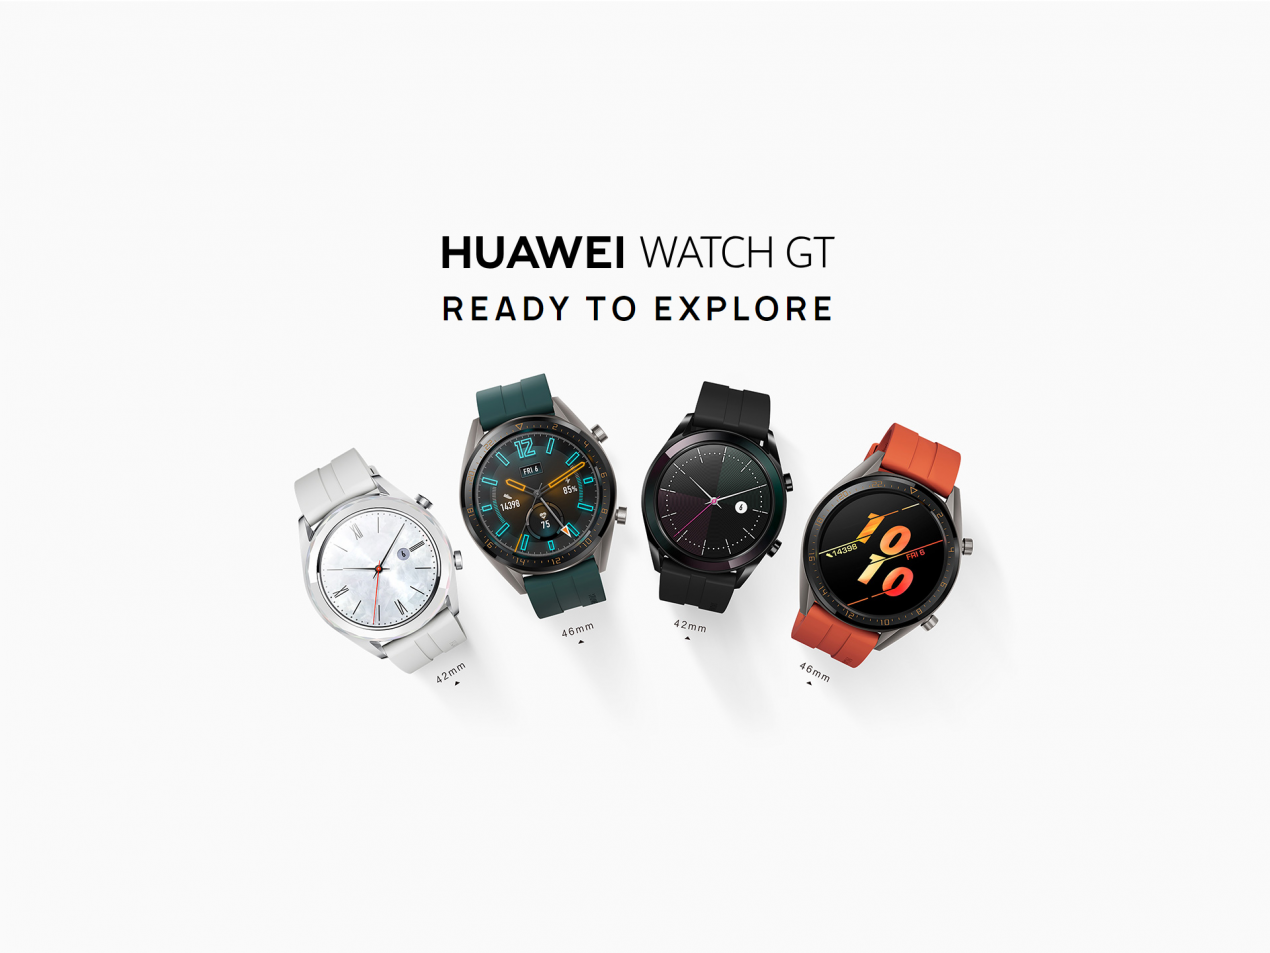 Huawei watch gt инструкция. Циферблаты на умные часы Хуавей. Huawei watch gt 4 Silver 55020bhv выгодный набор + подарок серт. 200р. Huawei watch gt 4 Silver 55020bhv выгодный набор + подарок серт. 200р цены.